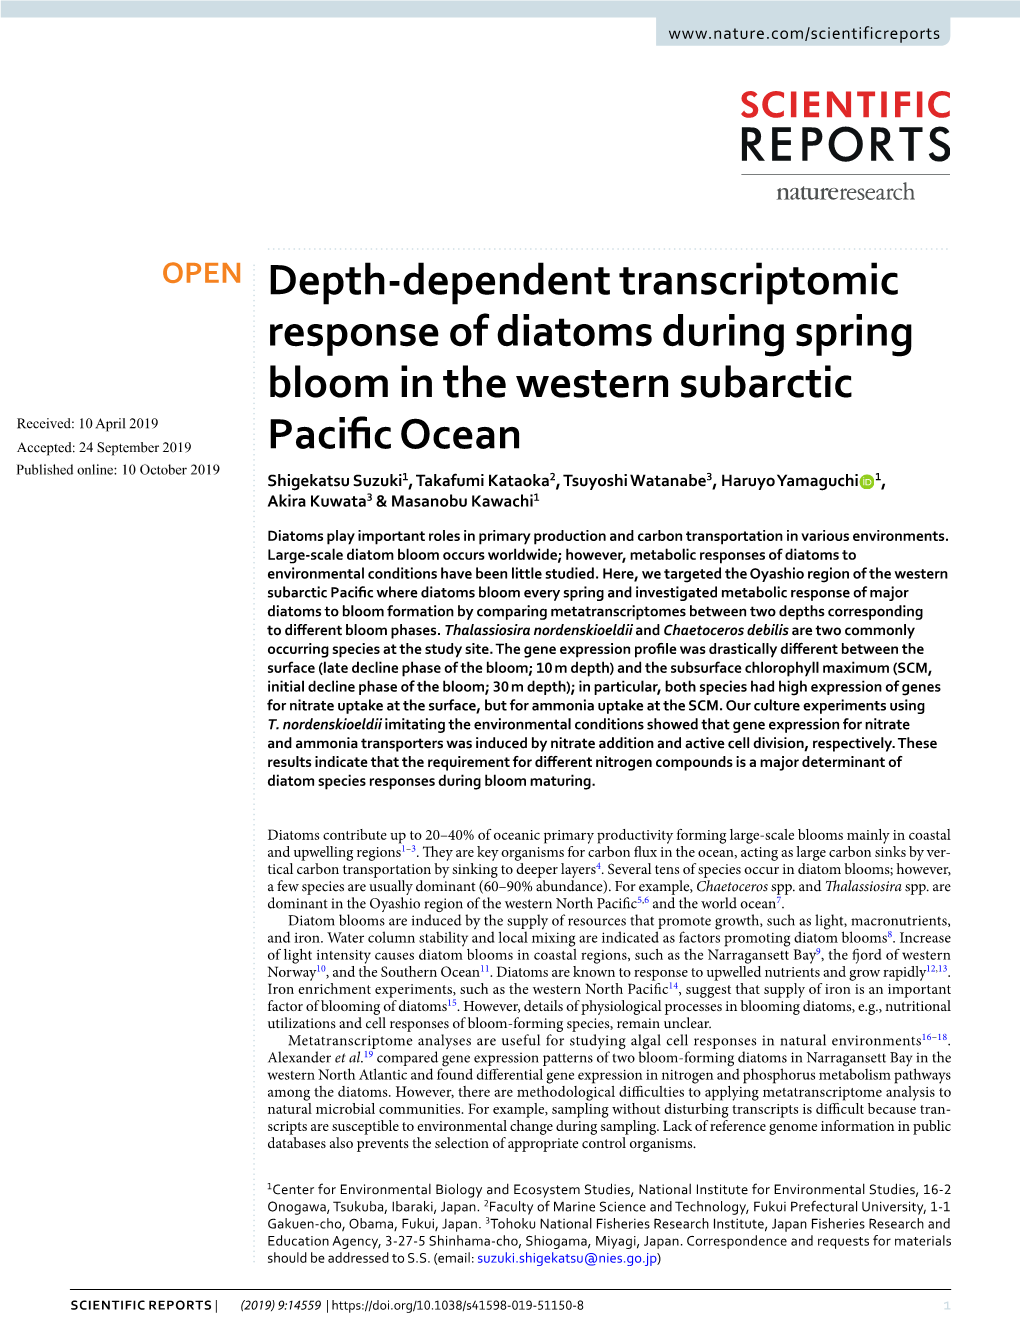 Depth-Dependent Transcriptomic Response of Diatoms During Spring